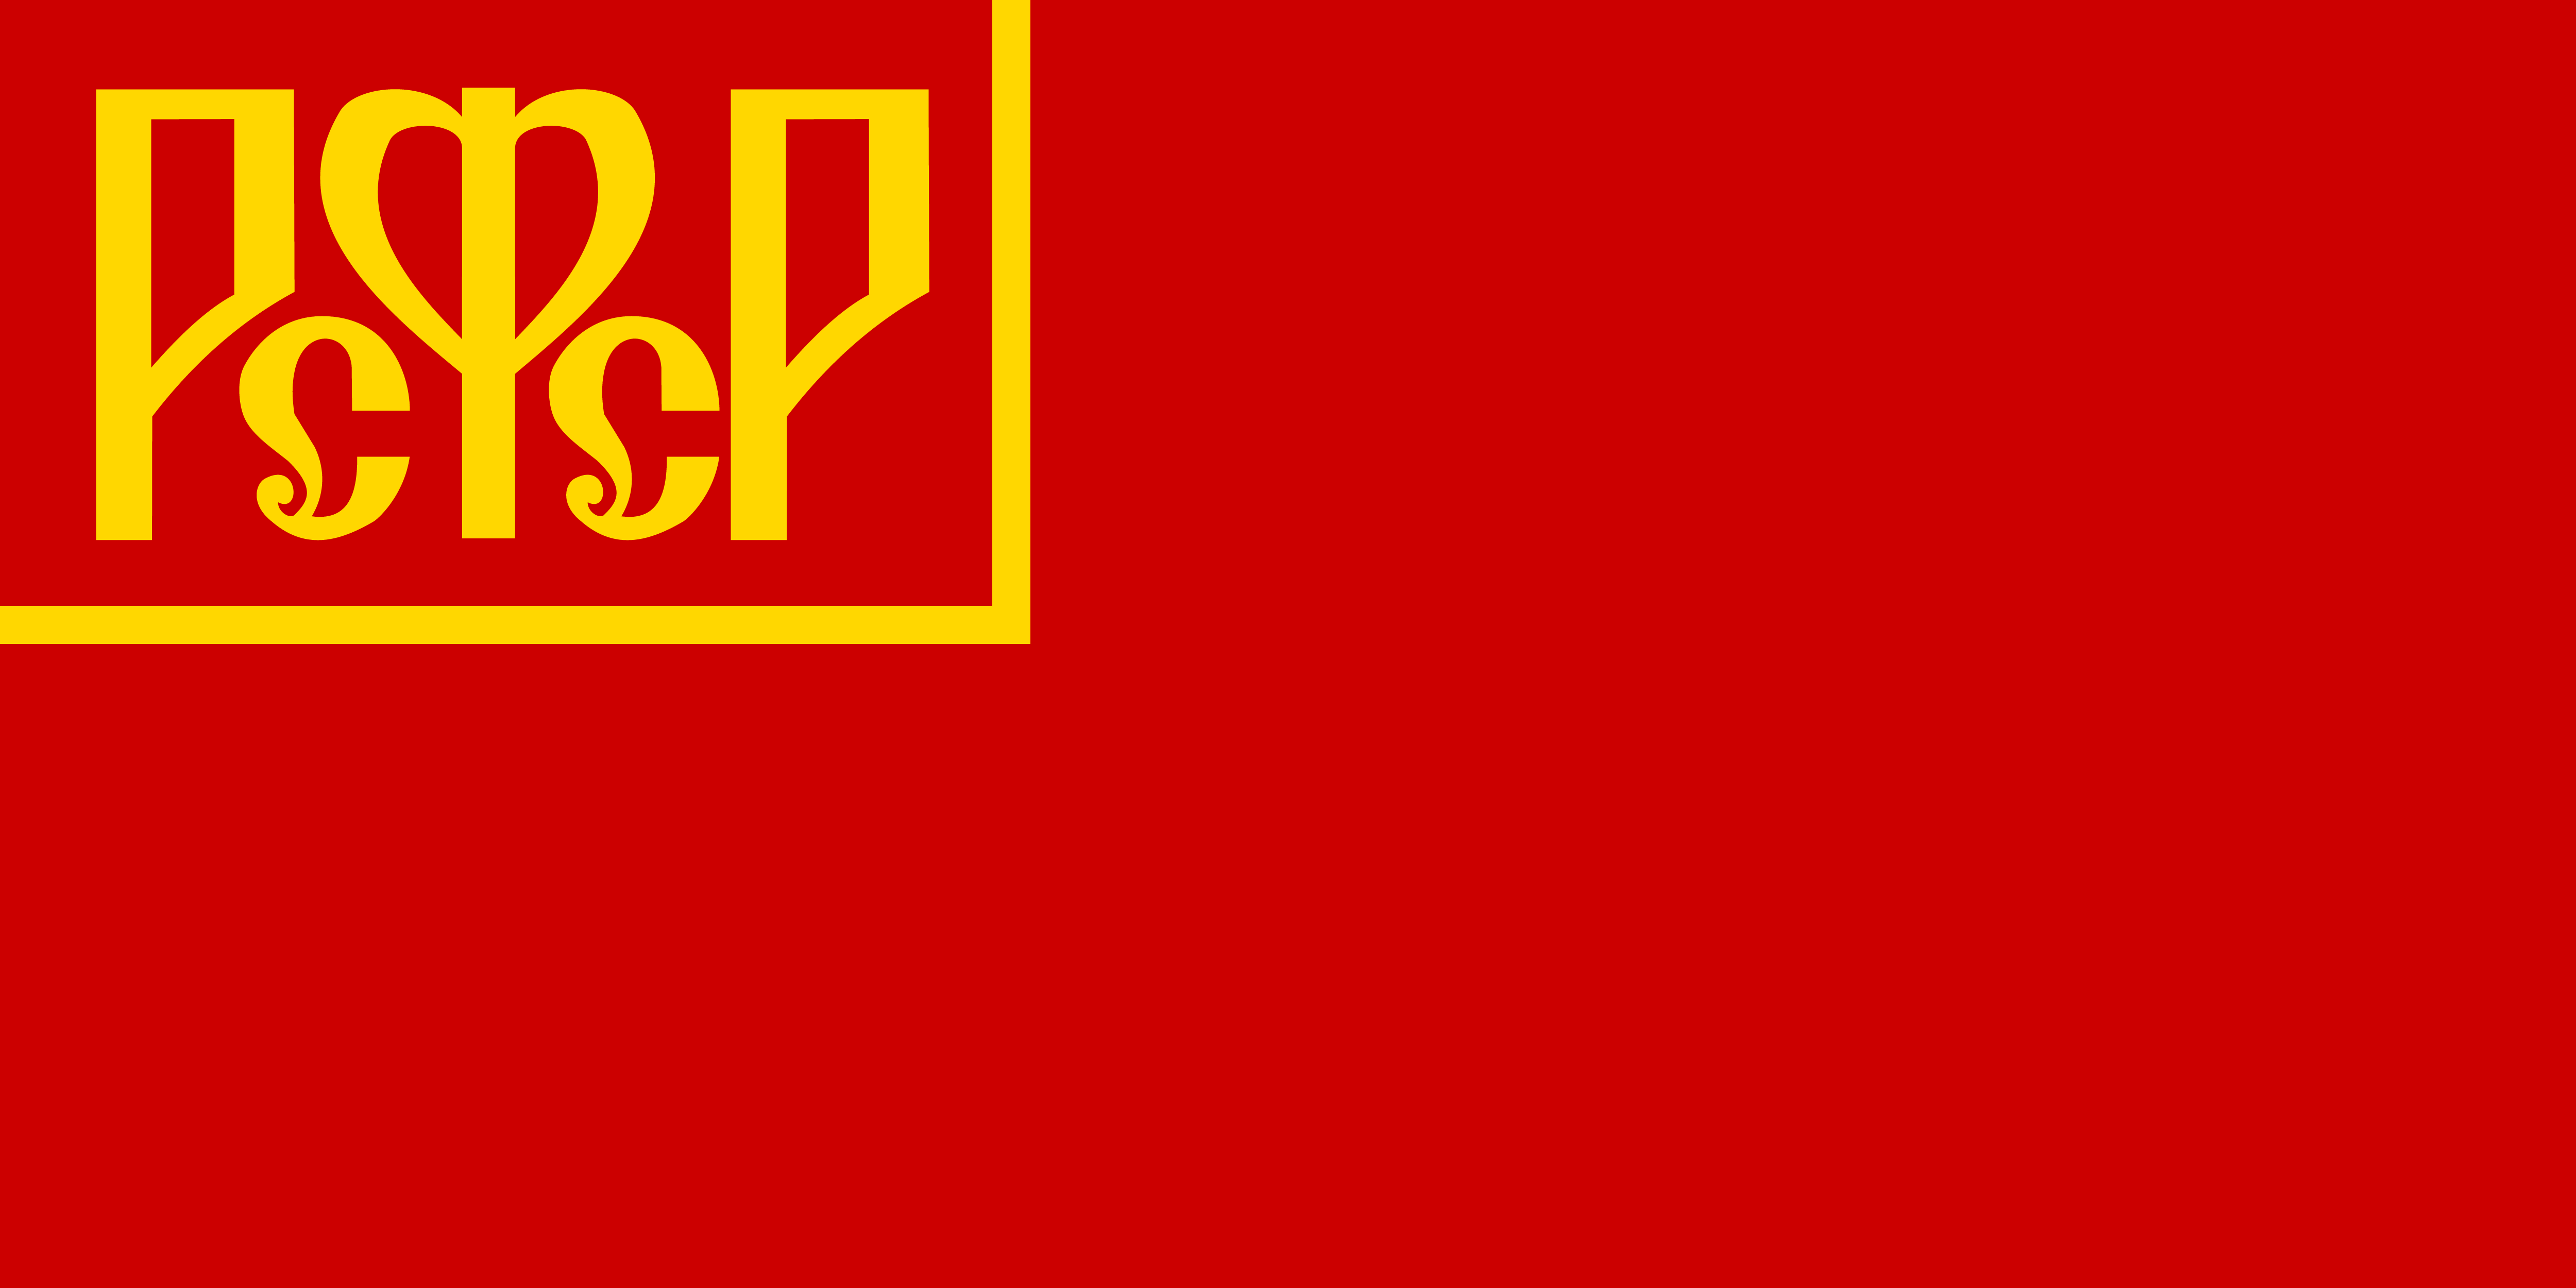 哪个版本的苏联国旗最好看?